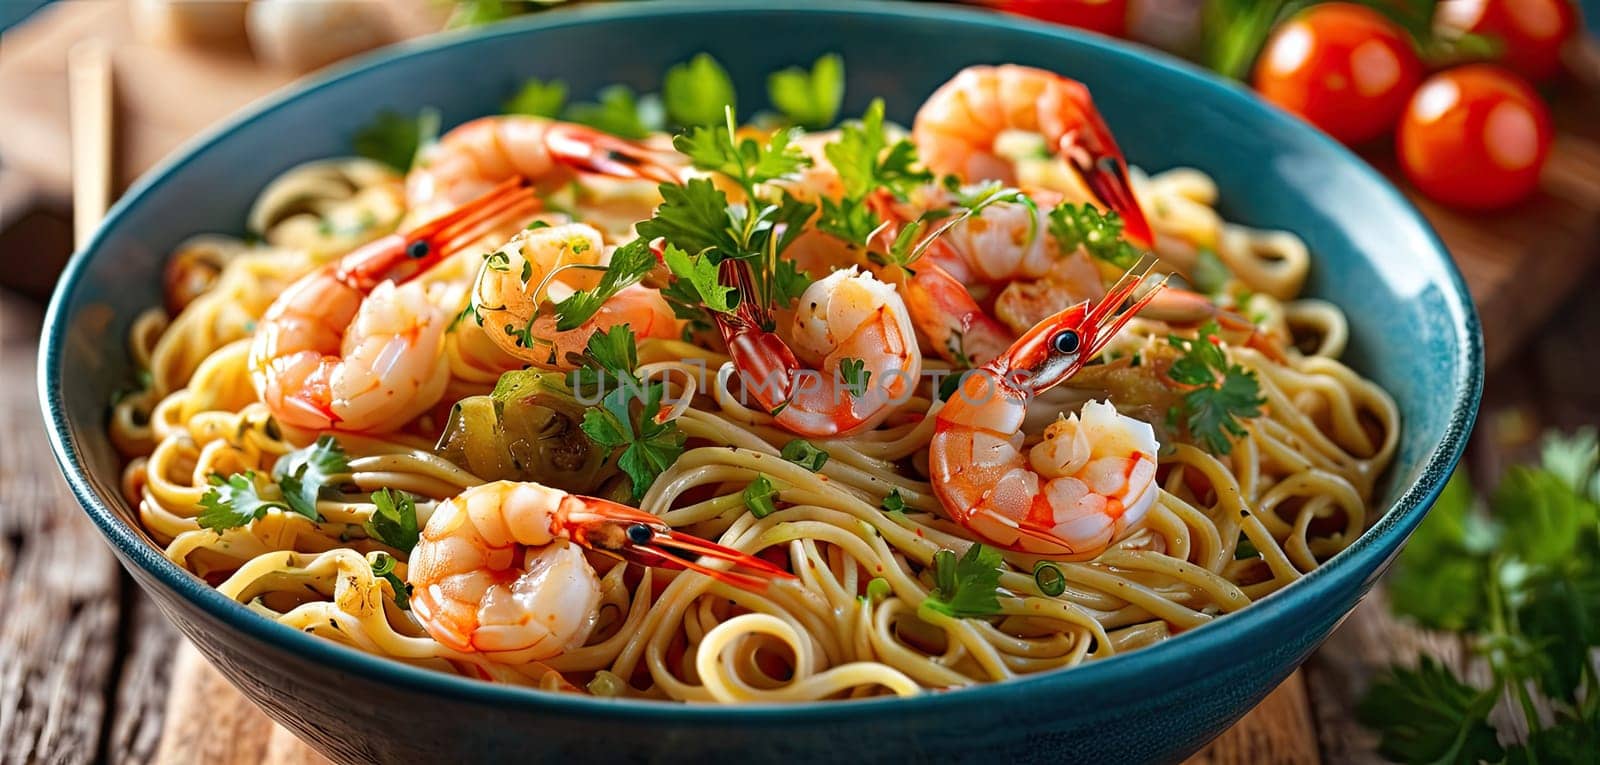 Noodles, shrimp, dinner in bowl, traditional cuisine served, indoor lighting highlights steam